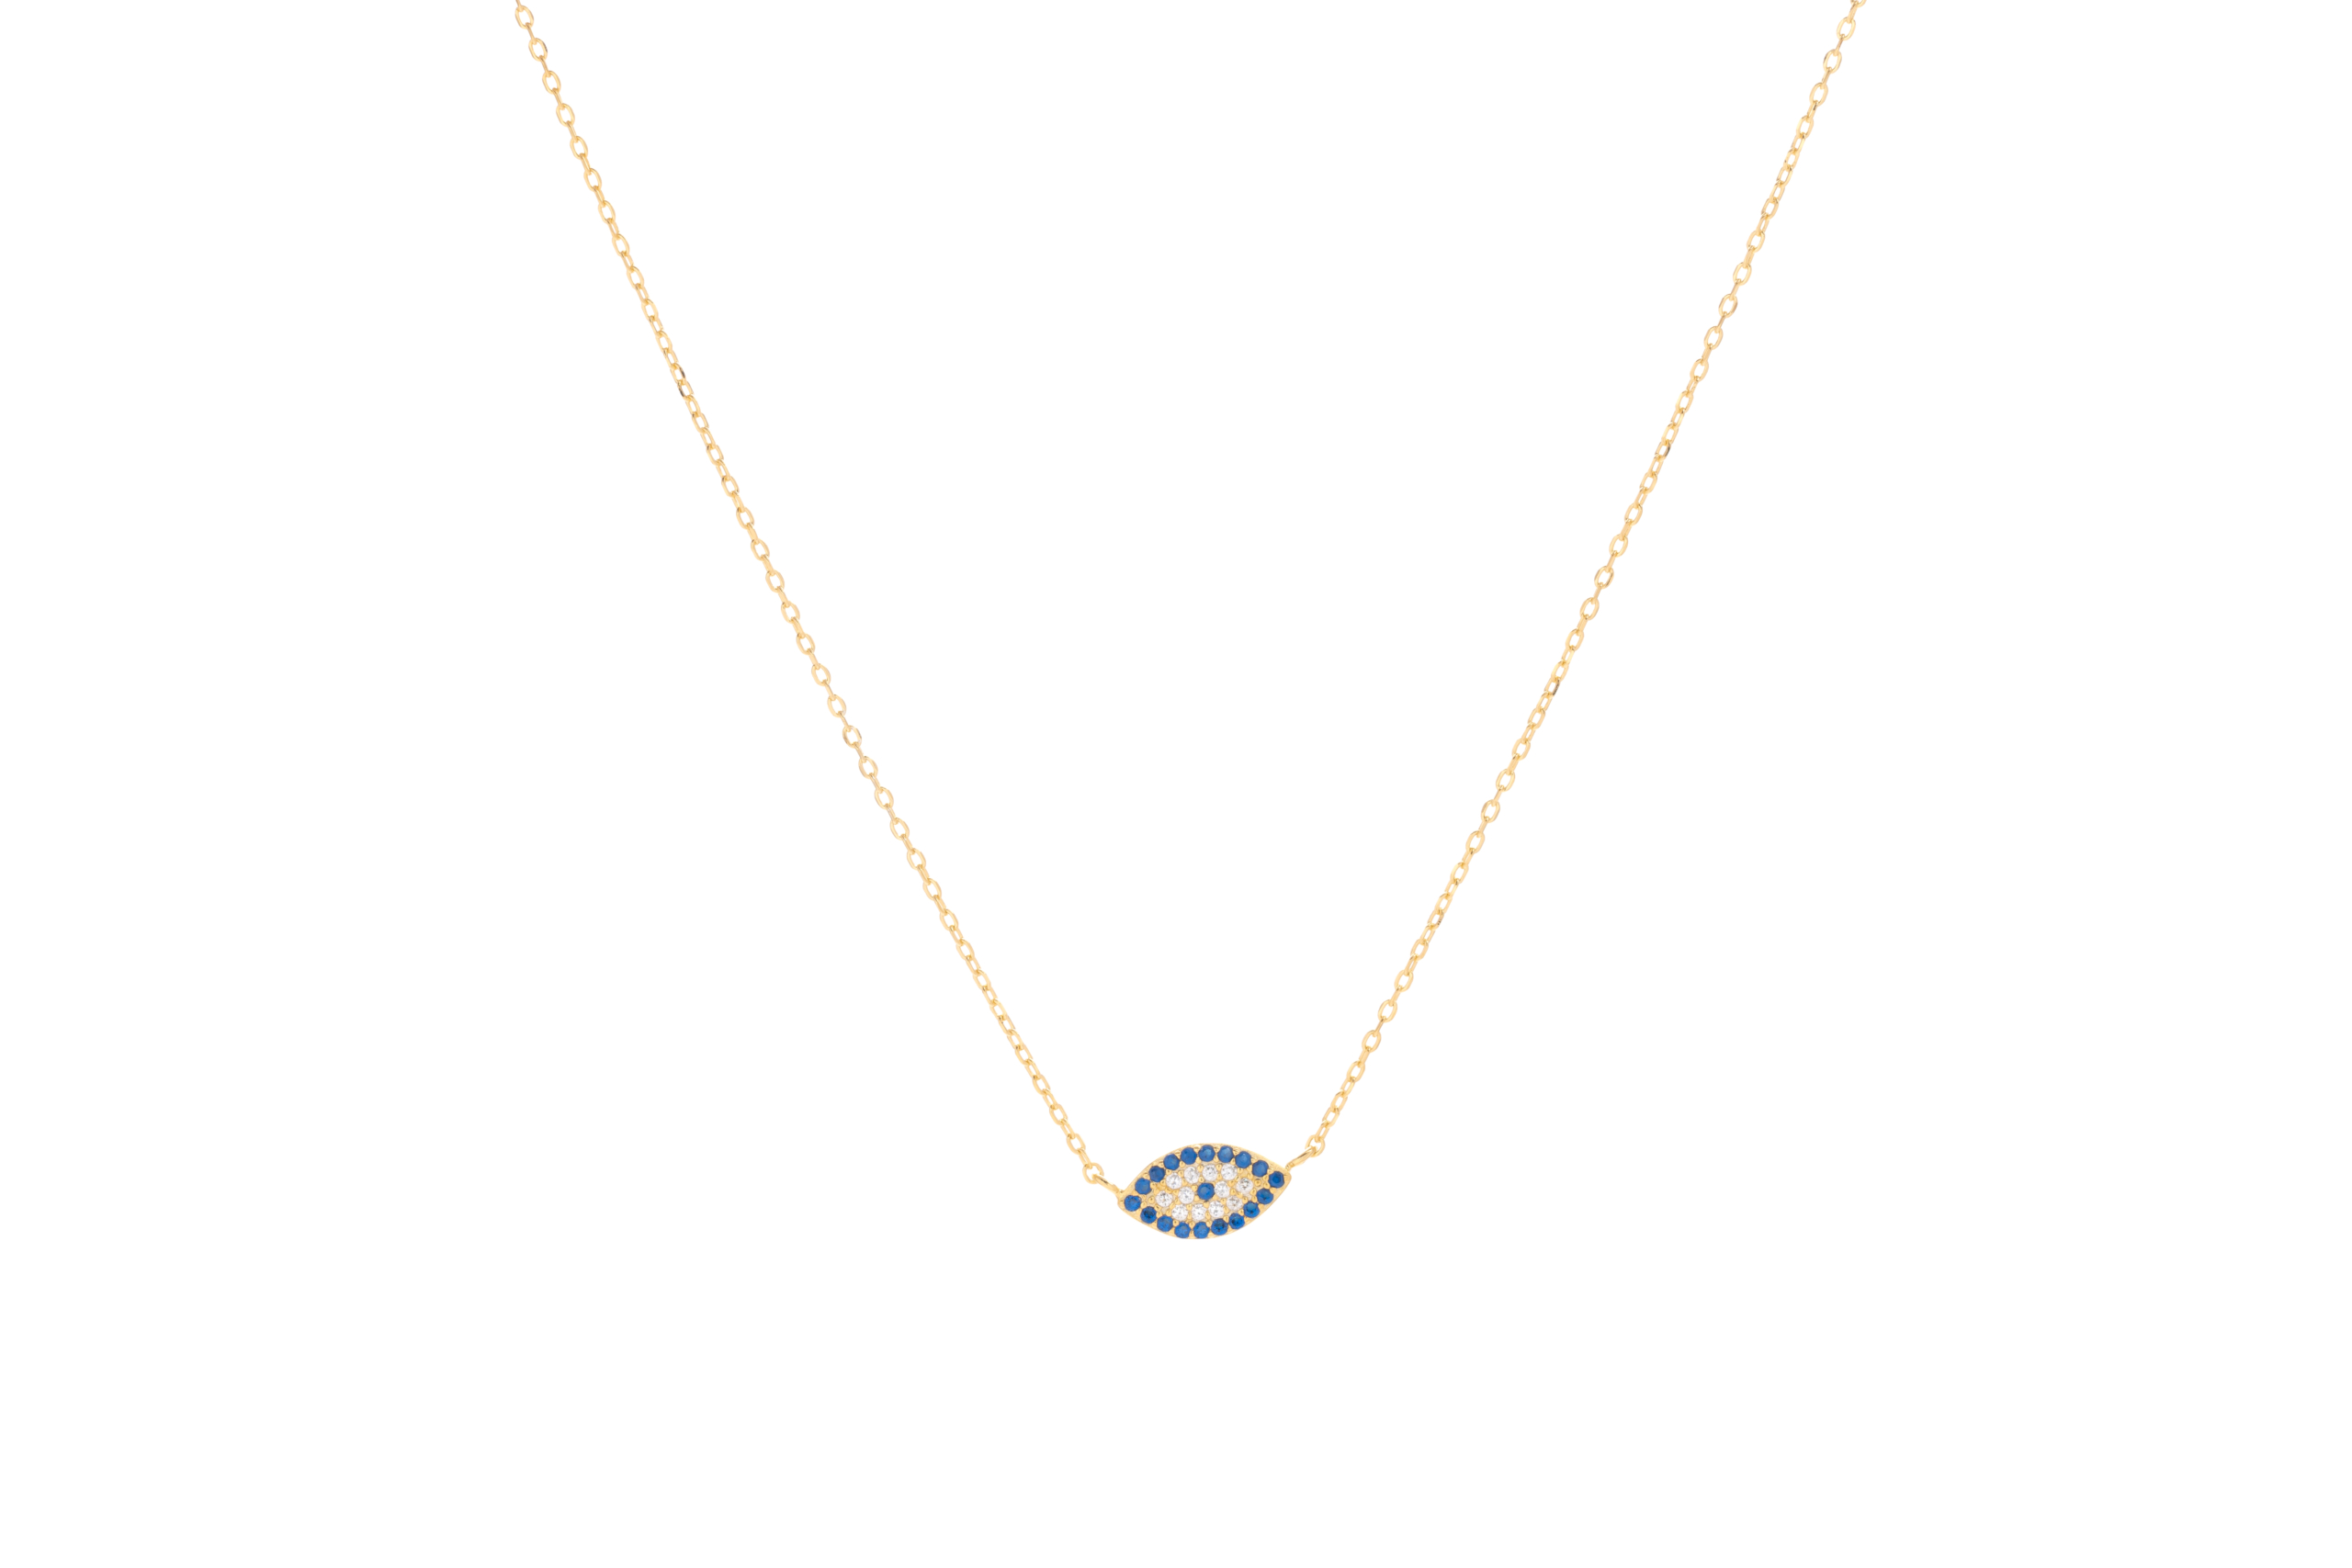 Γυναικείο κολιέ μάτι κορυφαίας ποιότητας από ασήμι 925 επιχρυσωμένο σε κίτρινο χρυσό με πέτρες ζιργκόν σε μπλε και λευκό χρώμα.